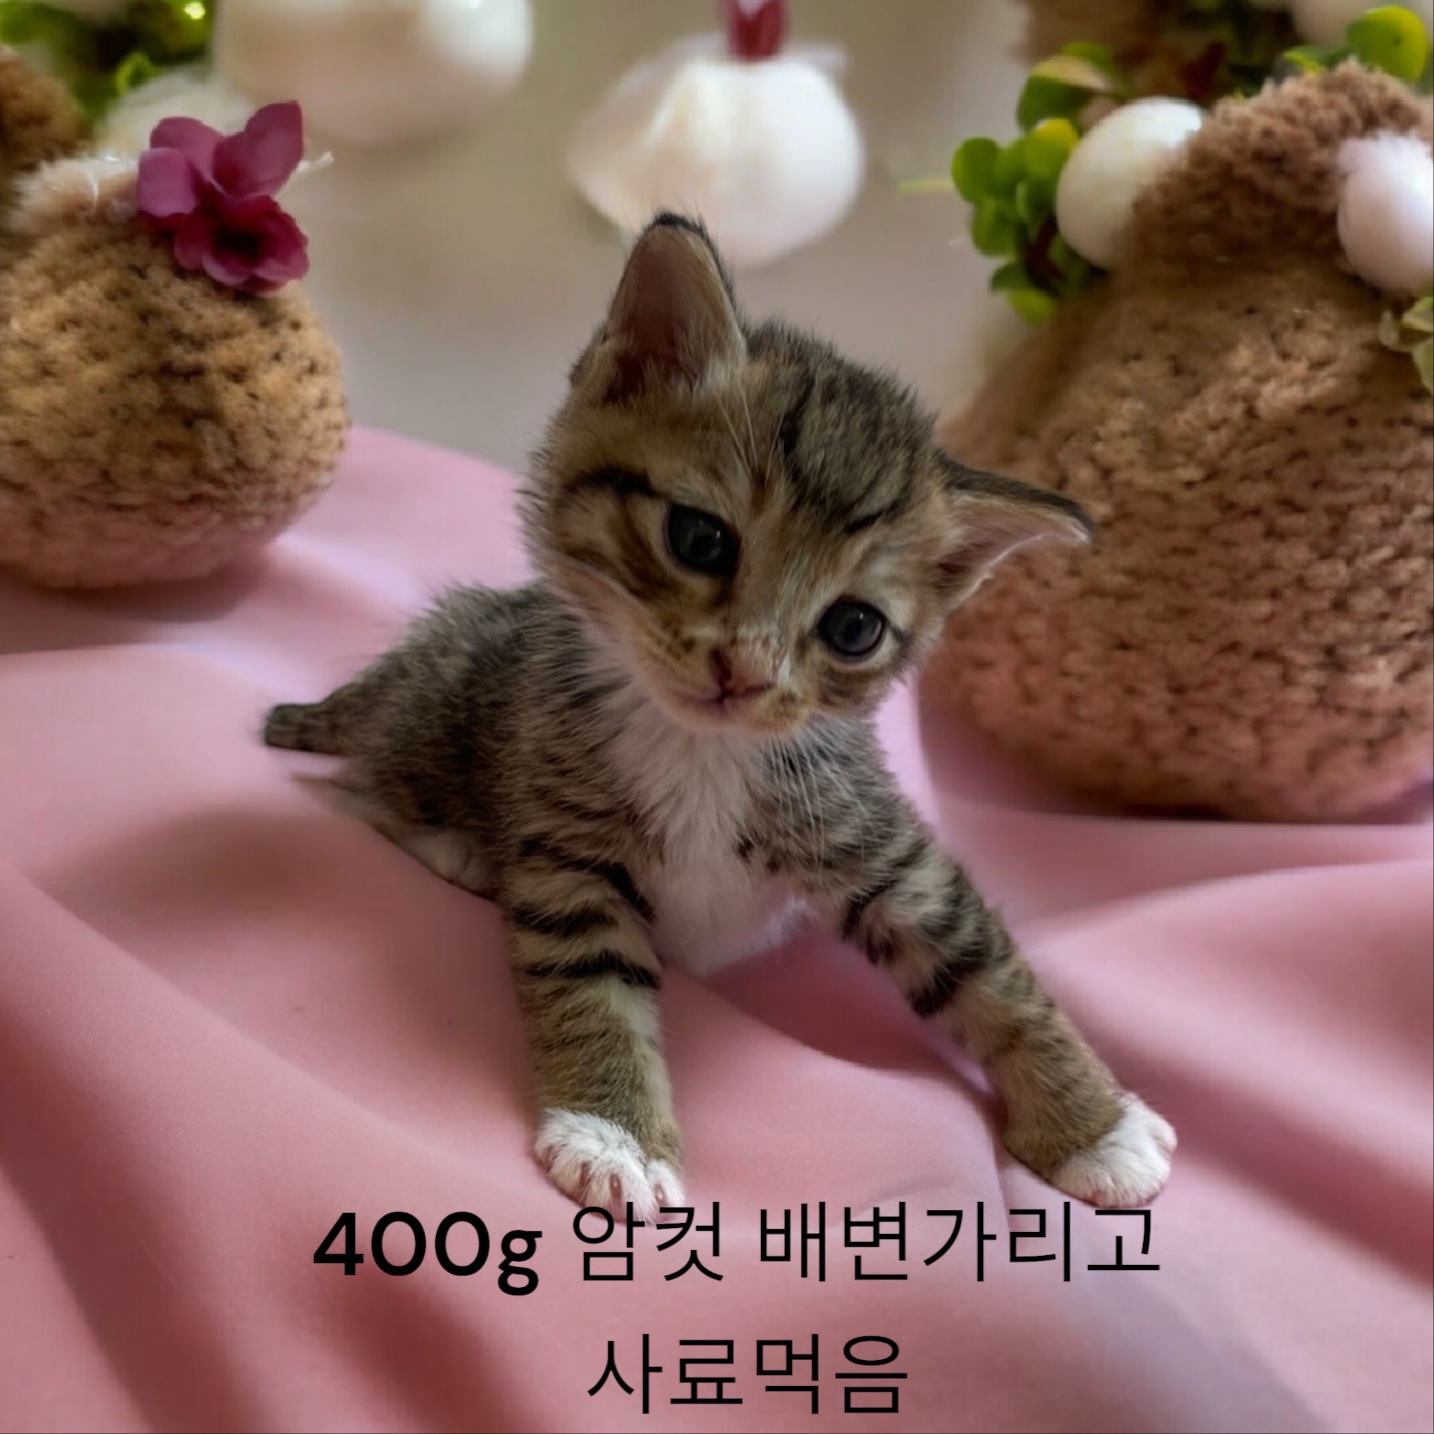 공고 번호가 경북-성주-2024-00221인 한국 고양이 동물 사진